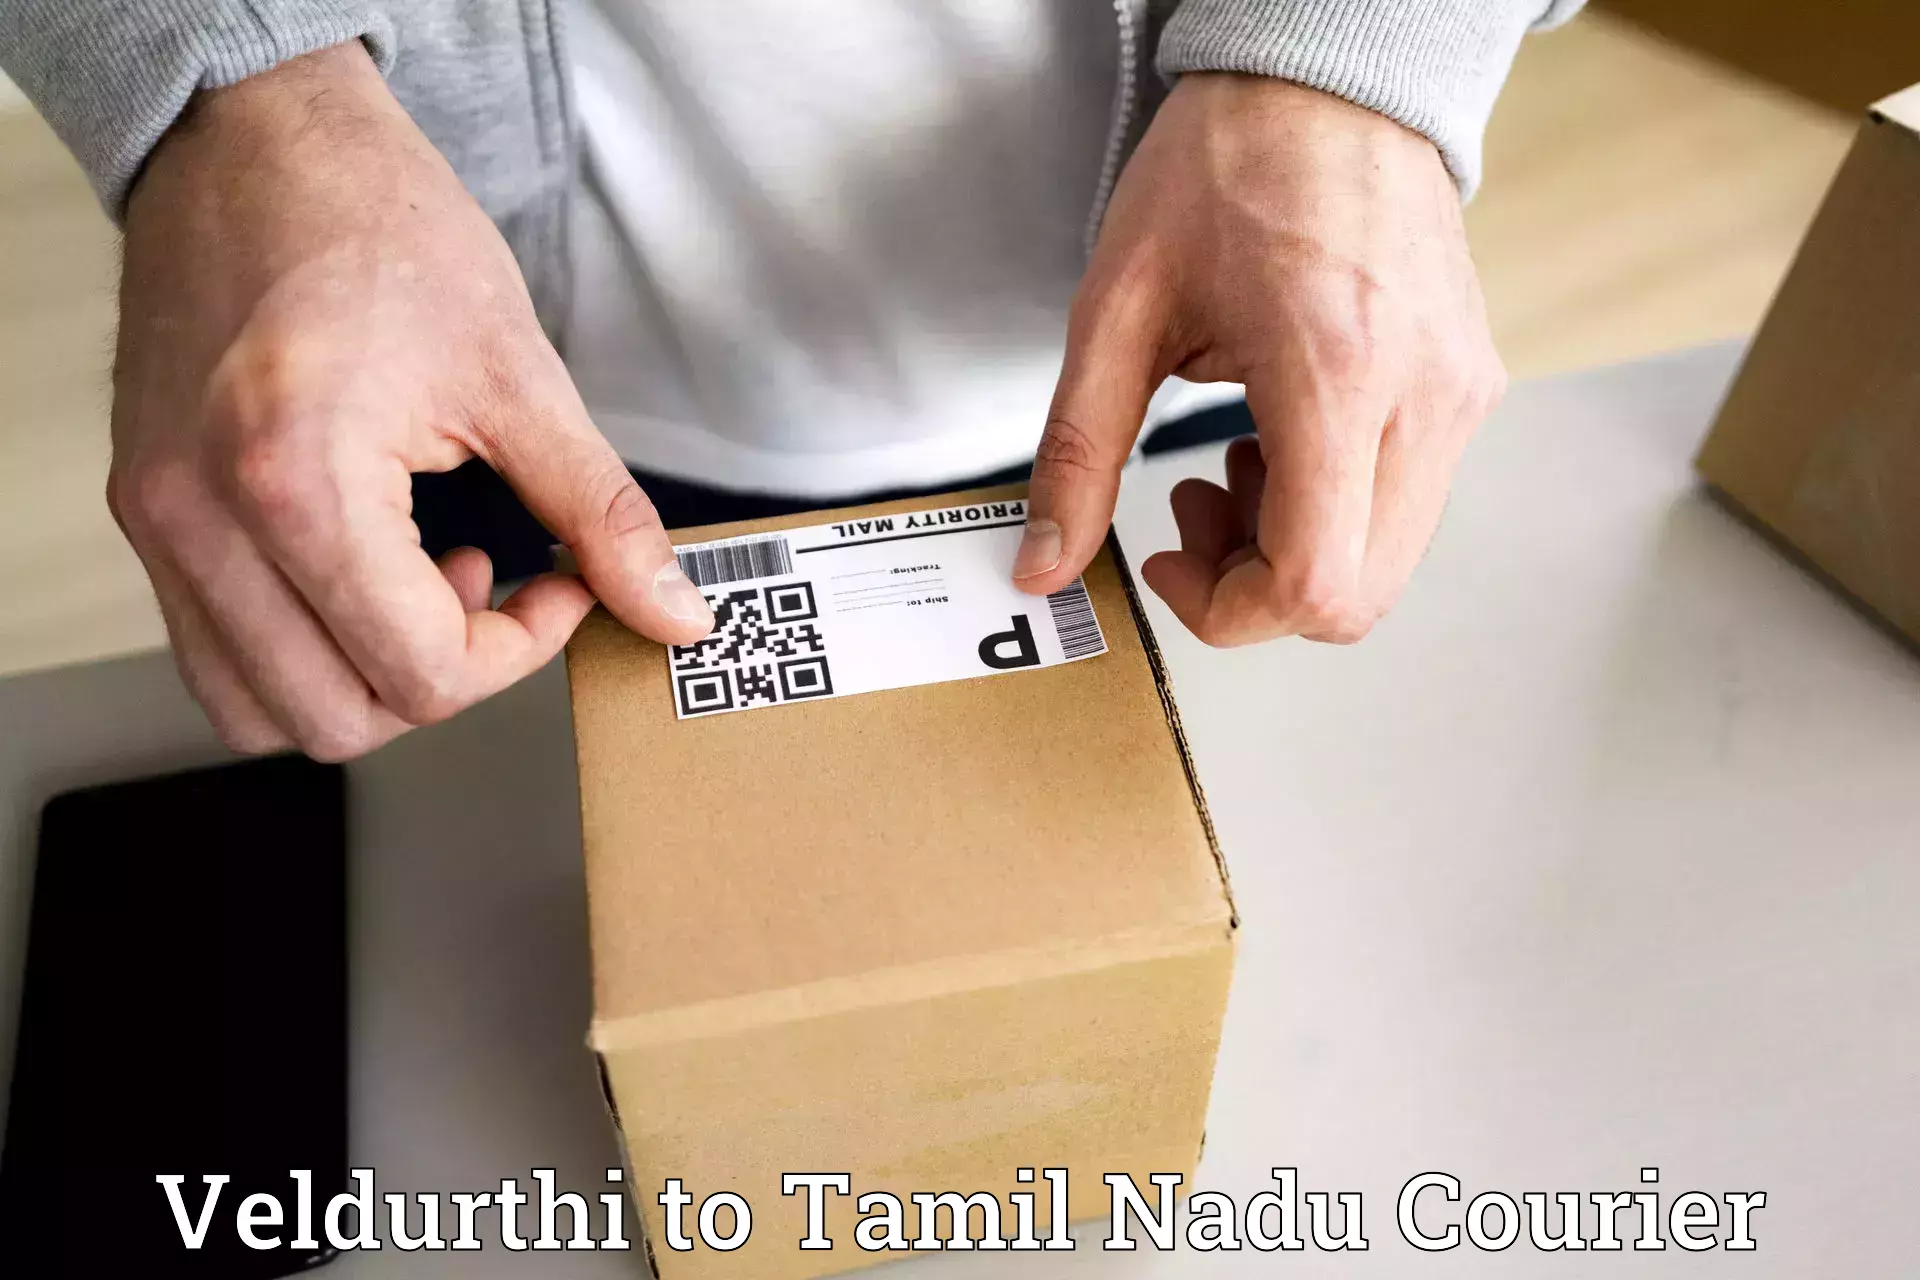 Seamless shipping experience Veldurthi to Sriperumbudur